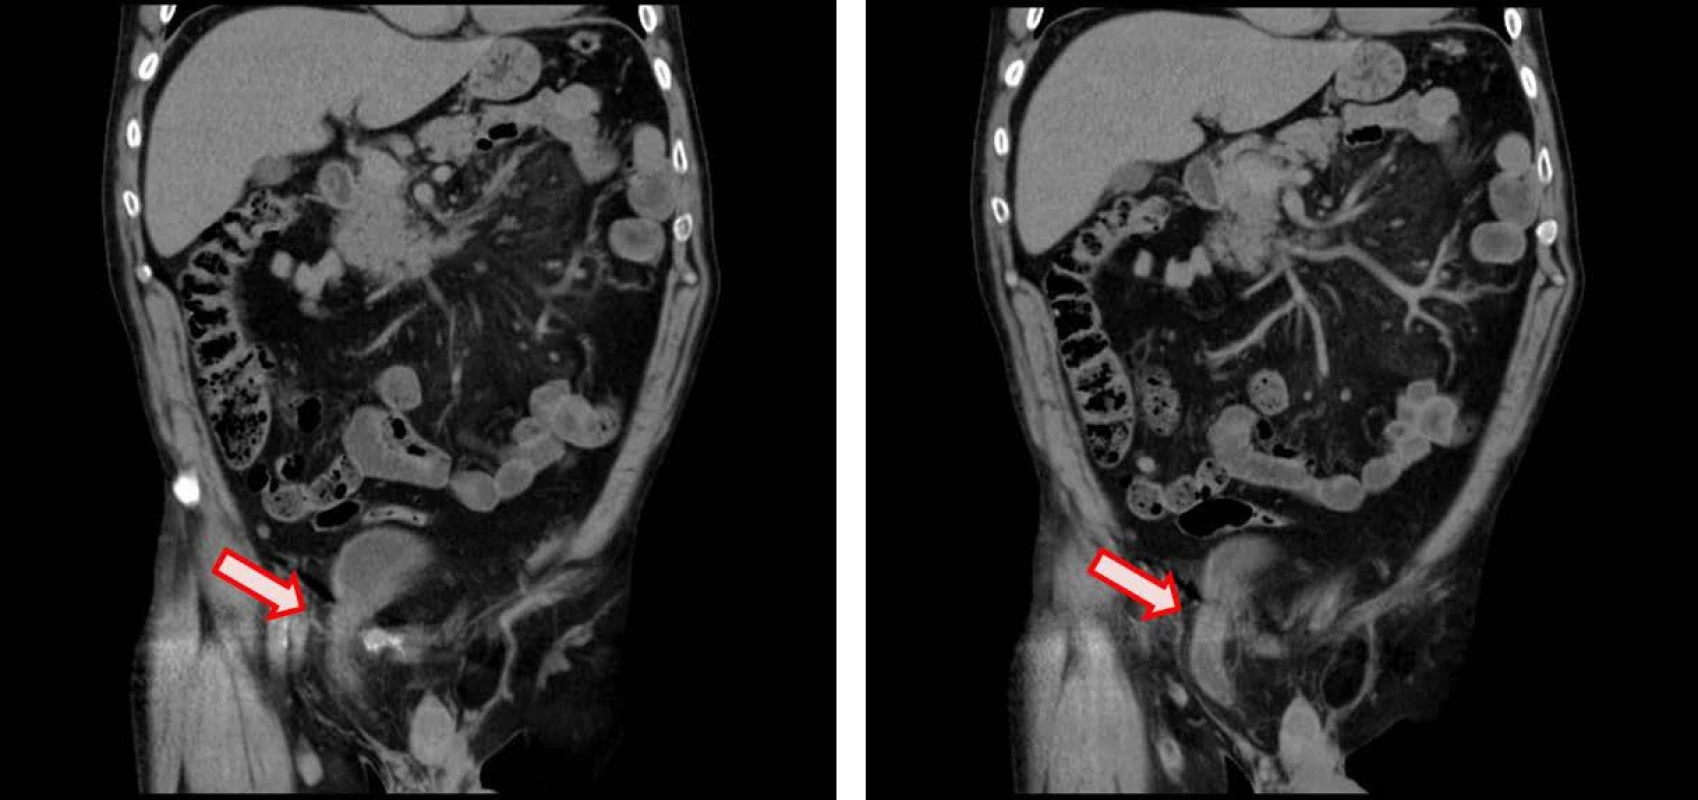 CT koronární řez – herniace močového měchýře do pravého třísla (velikost 48x28 mm)
Fig. 1. CT coronal plane – inguinal bladder herniation (size 48x28 mm)